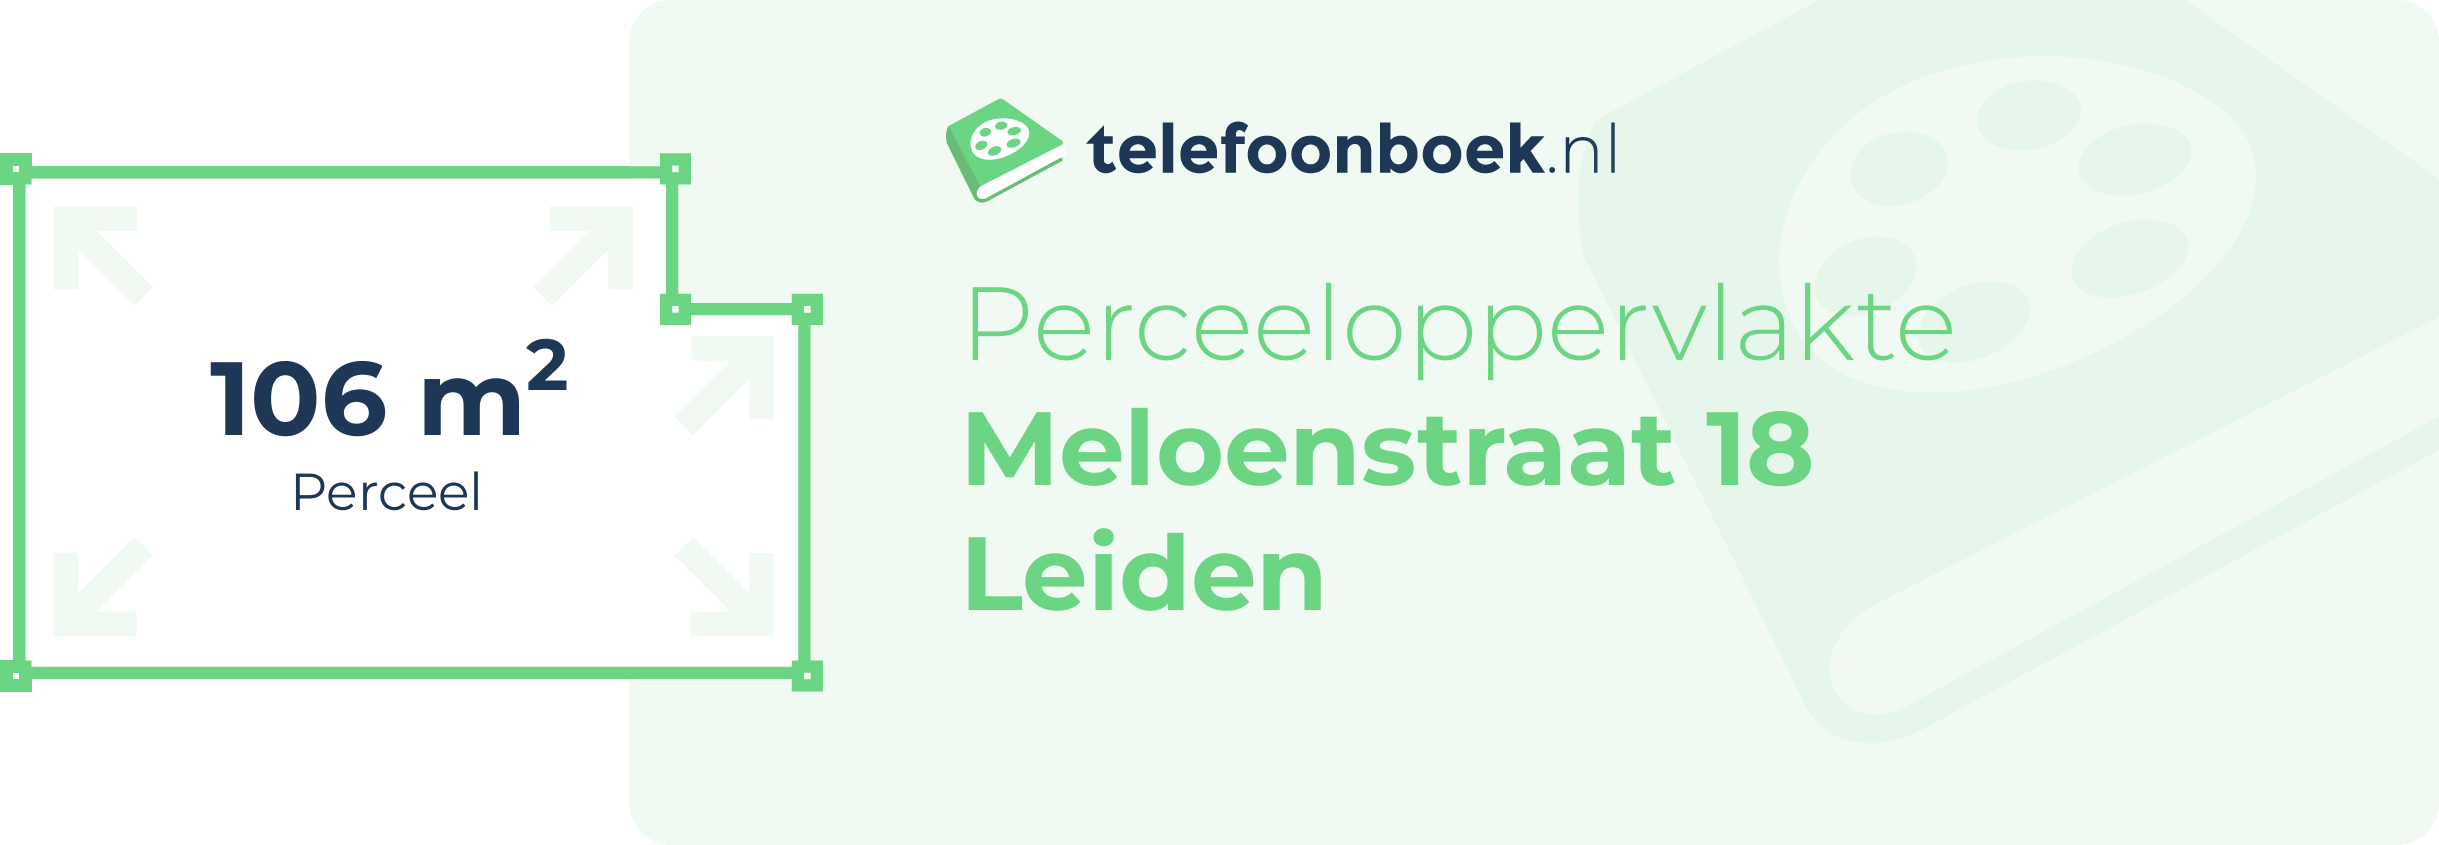 Perceeloppervlakte Meloenstraat 18 Leiden